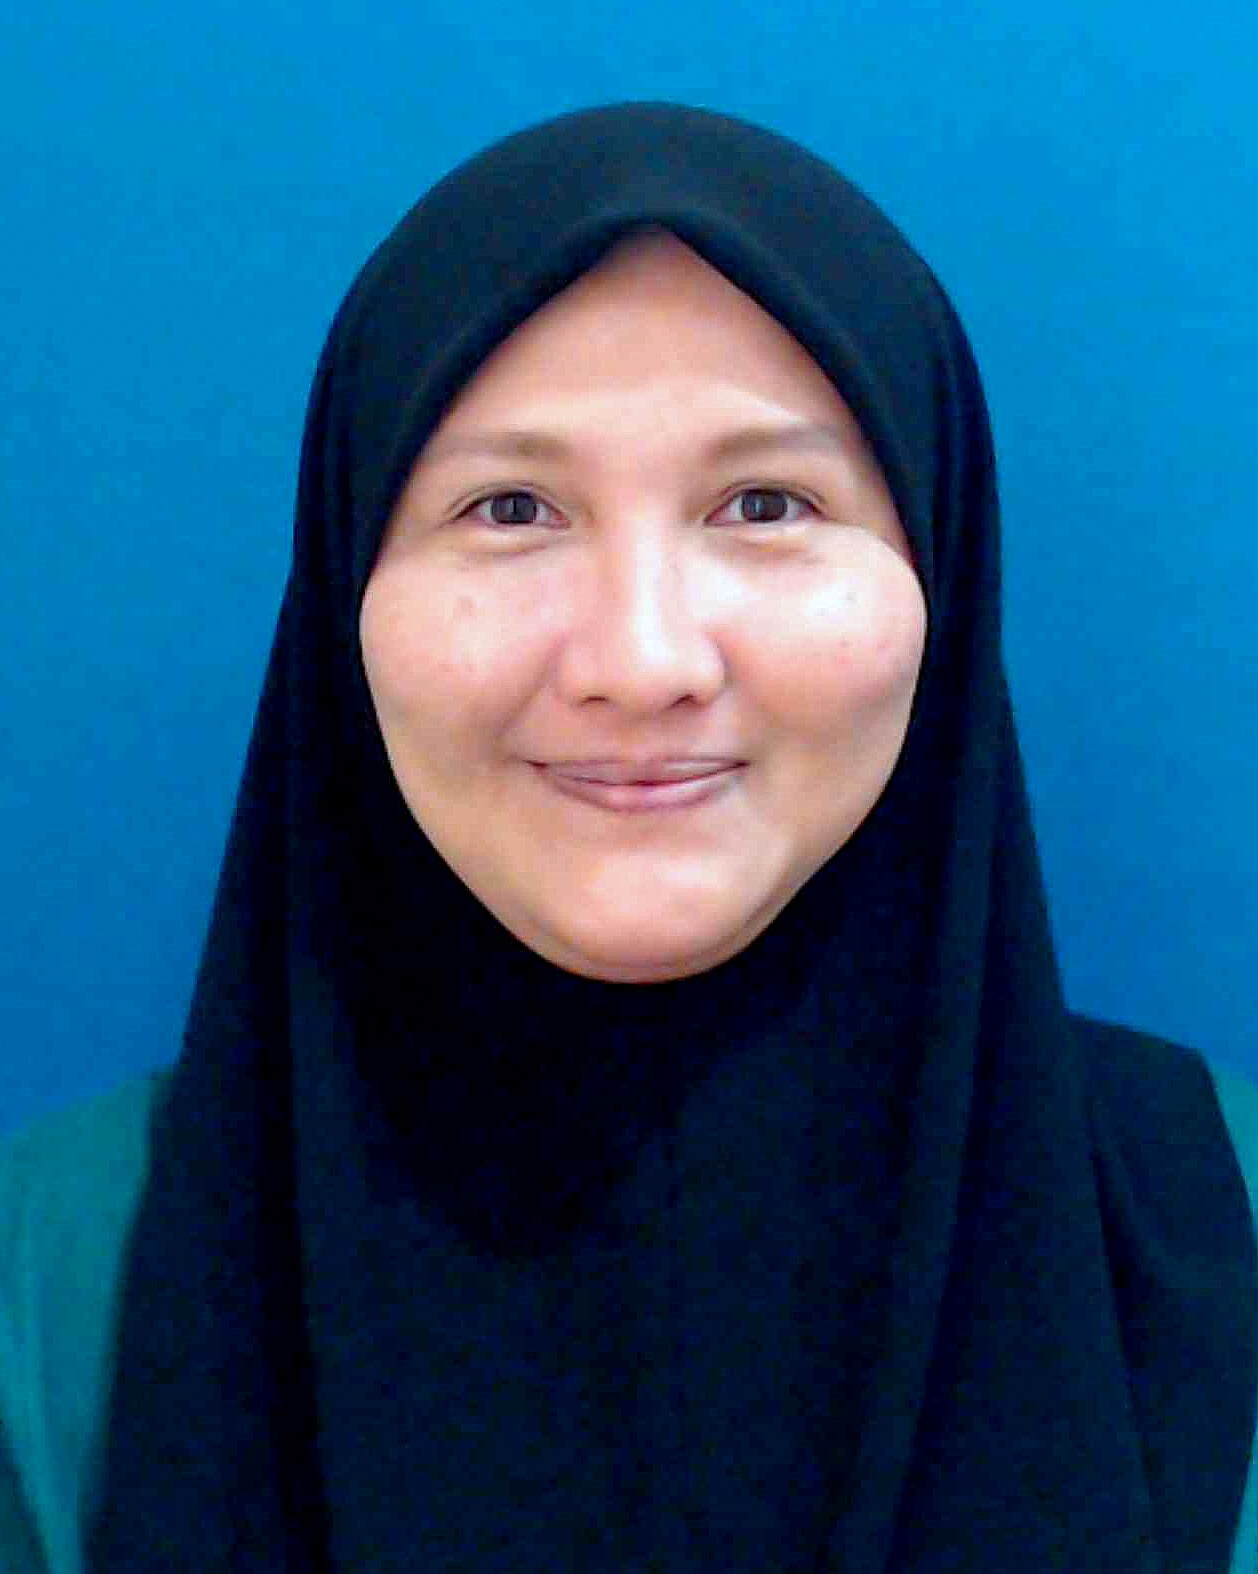 Zuwainah Binti Hamzah